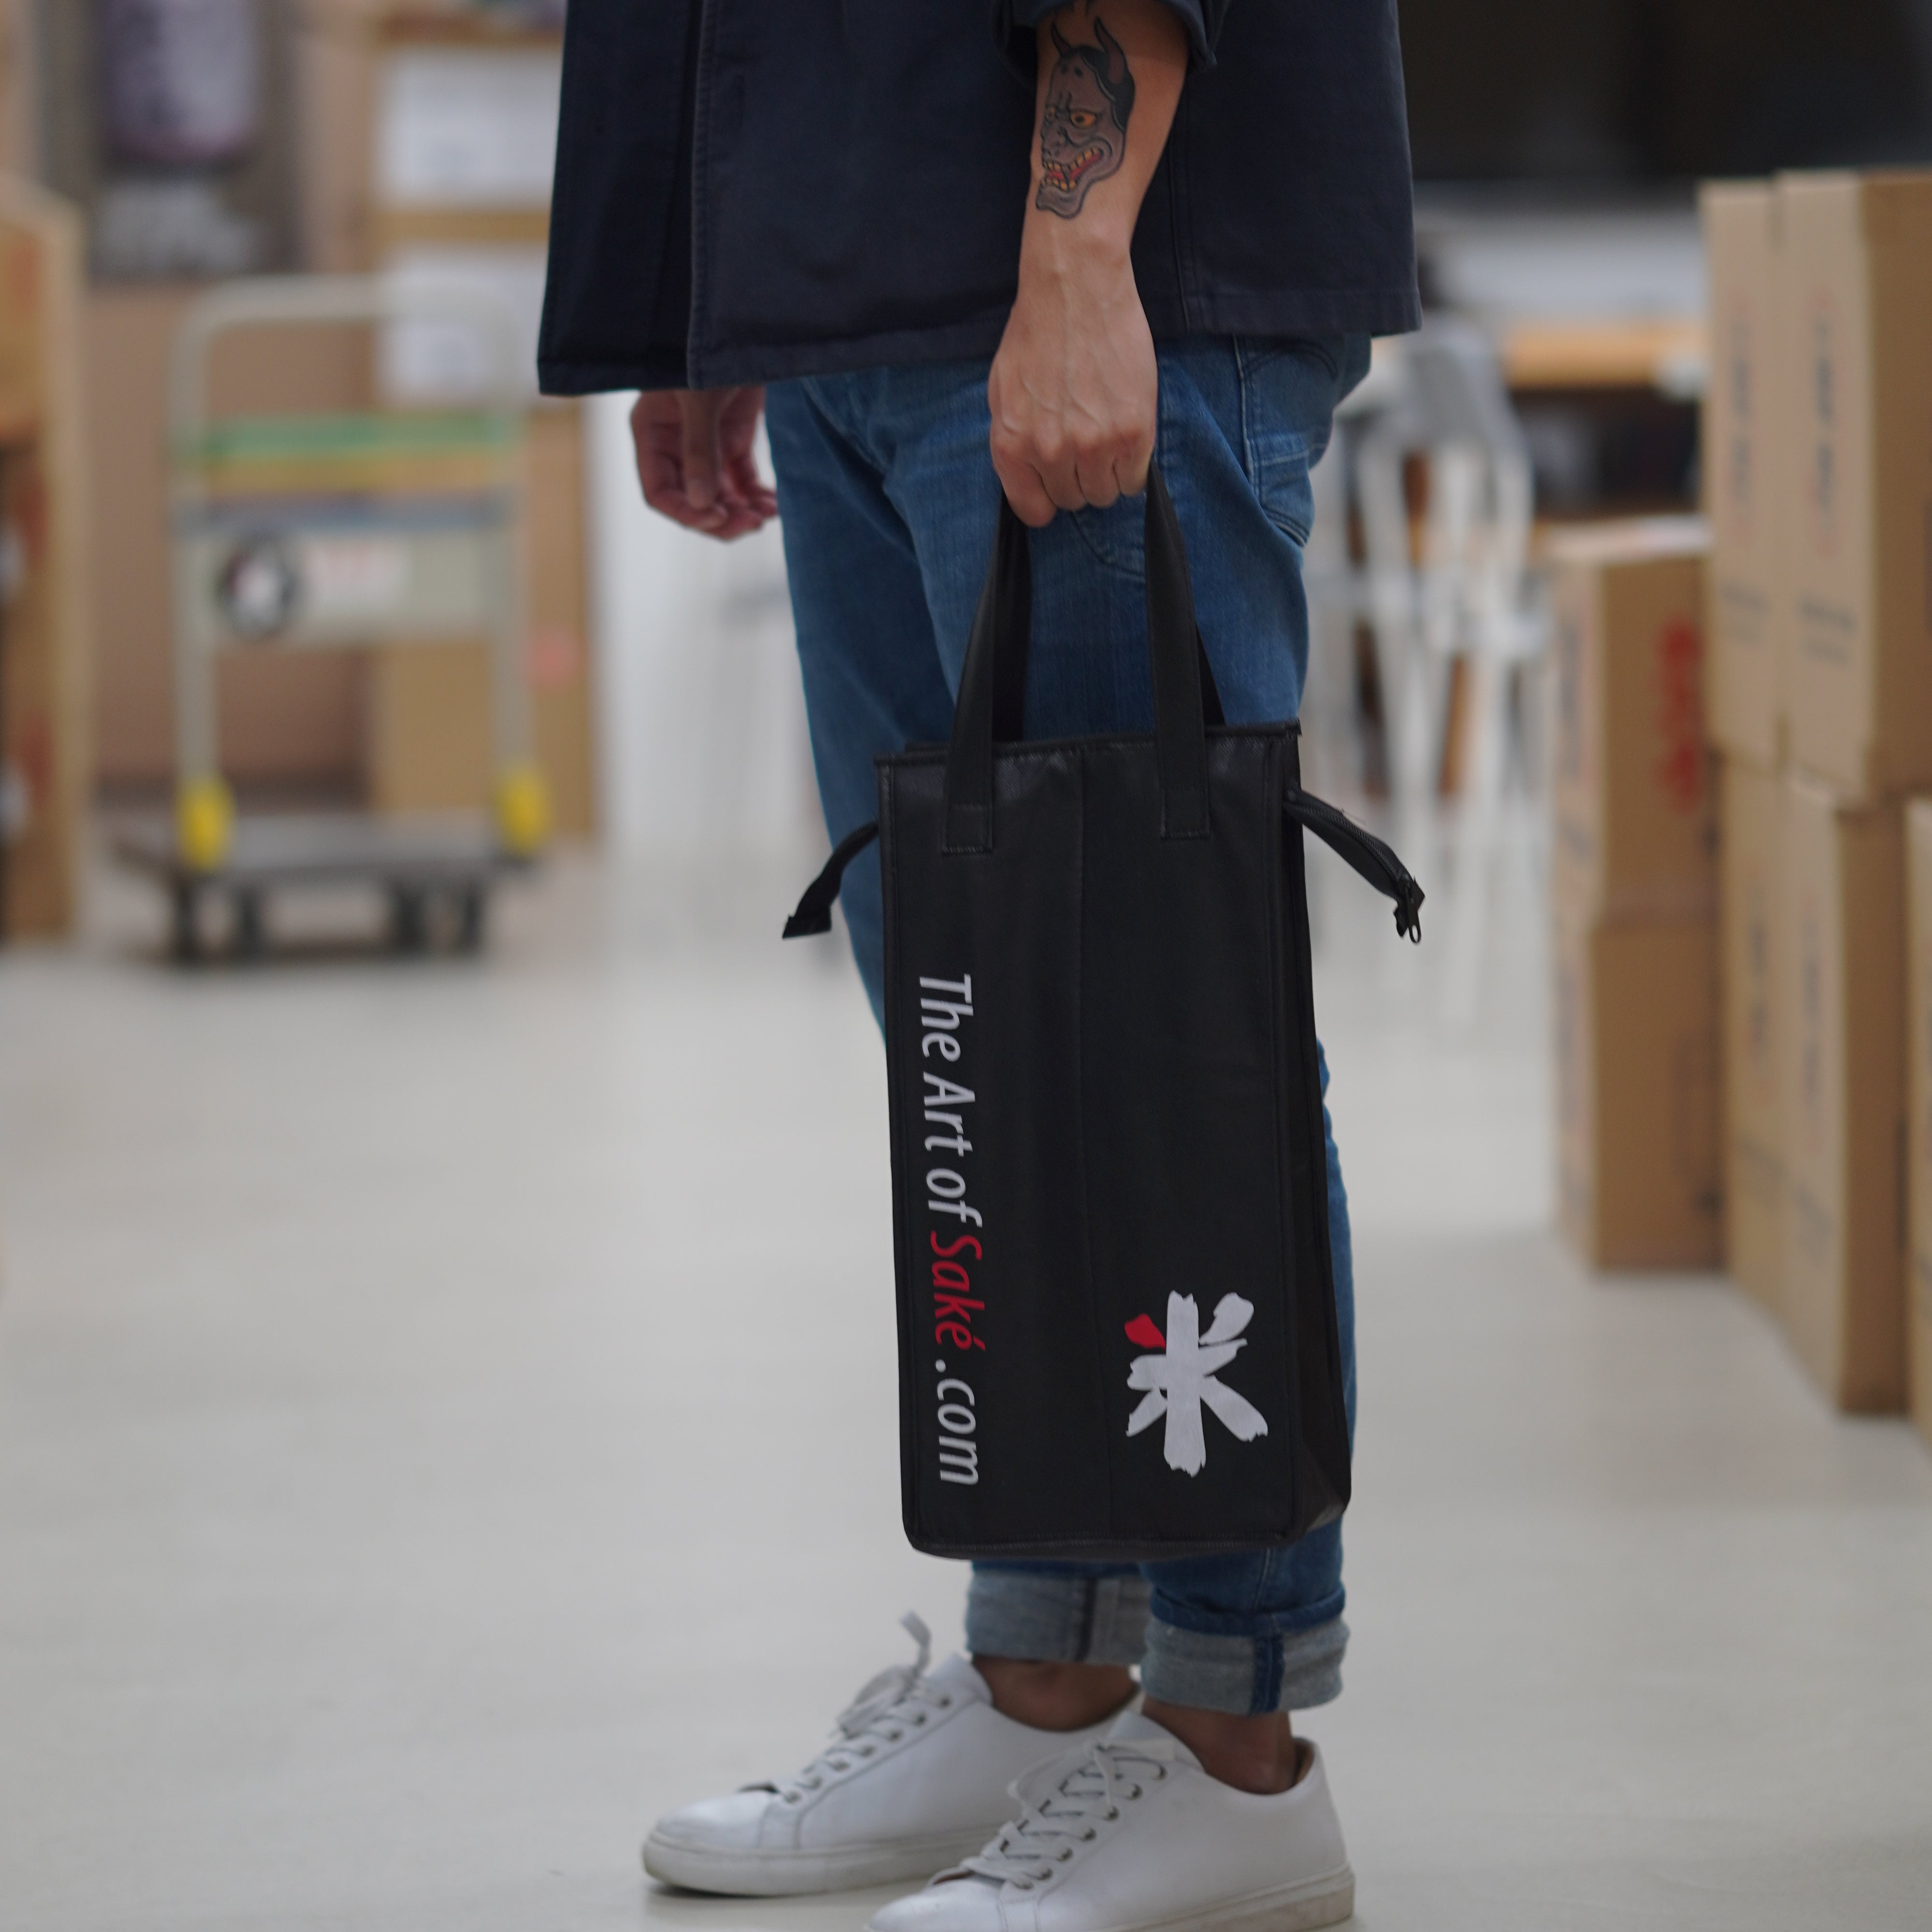 The Art of Sake 2-Bottle Cooler Bag